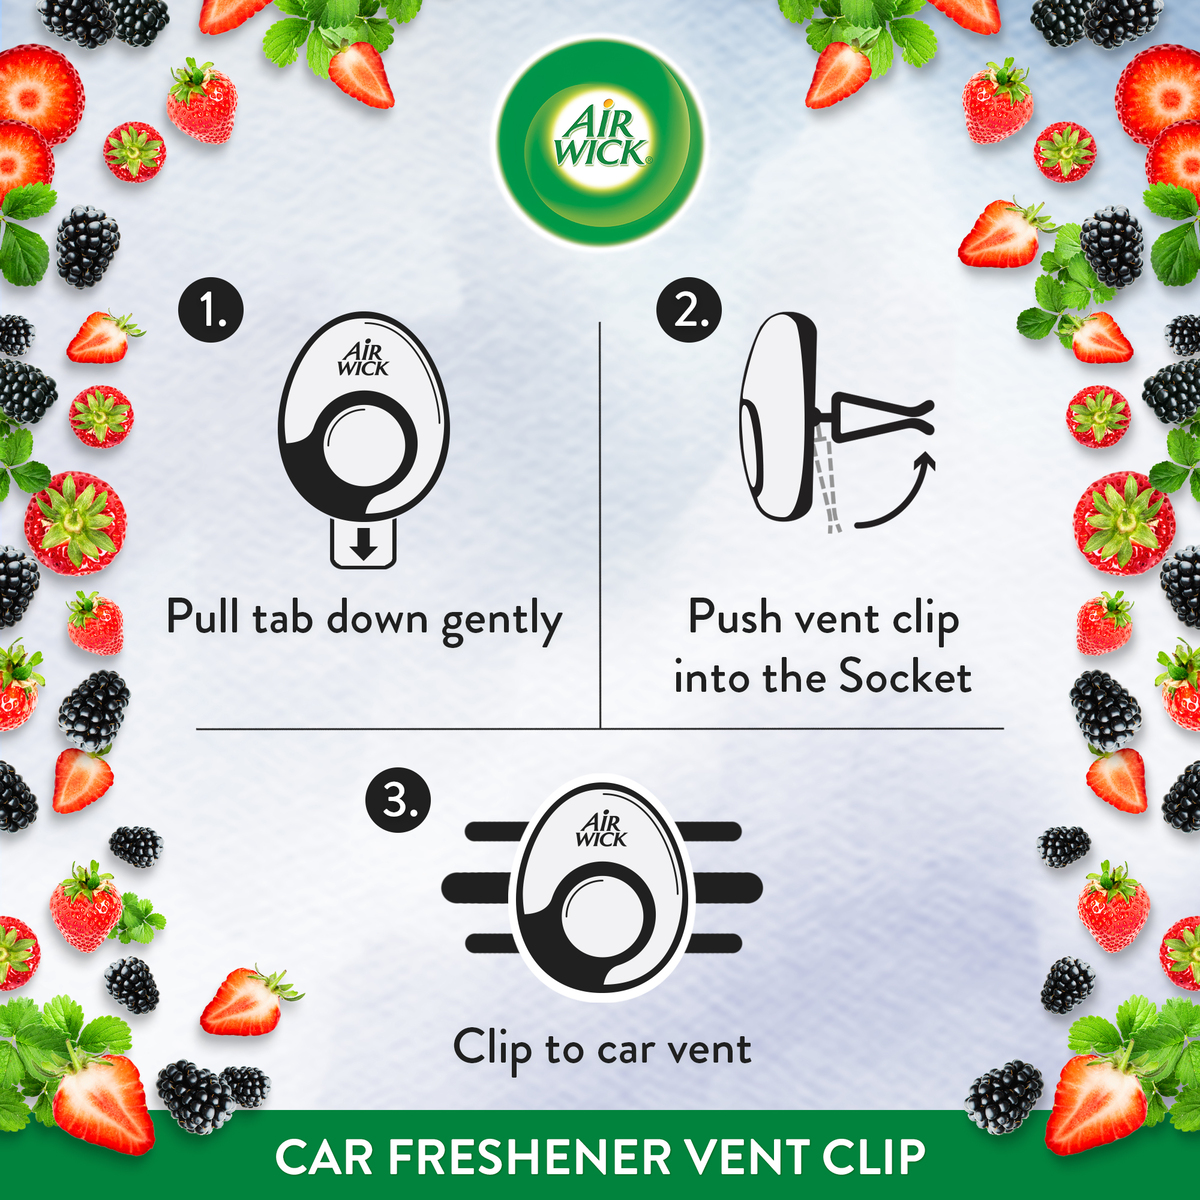 Air Wick Car Freshener 2.5ml, Air Fresheners